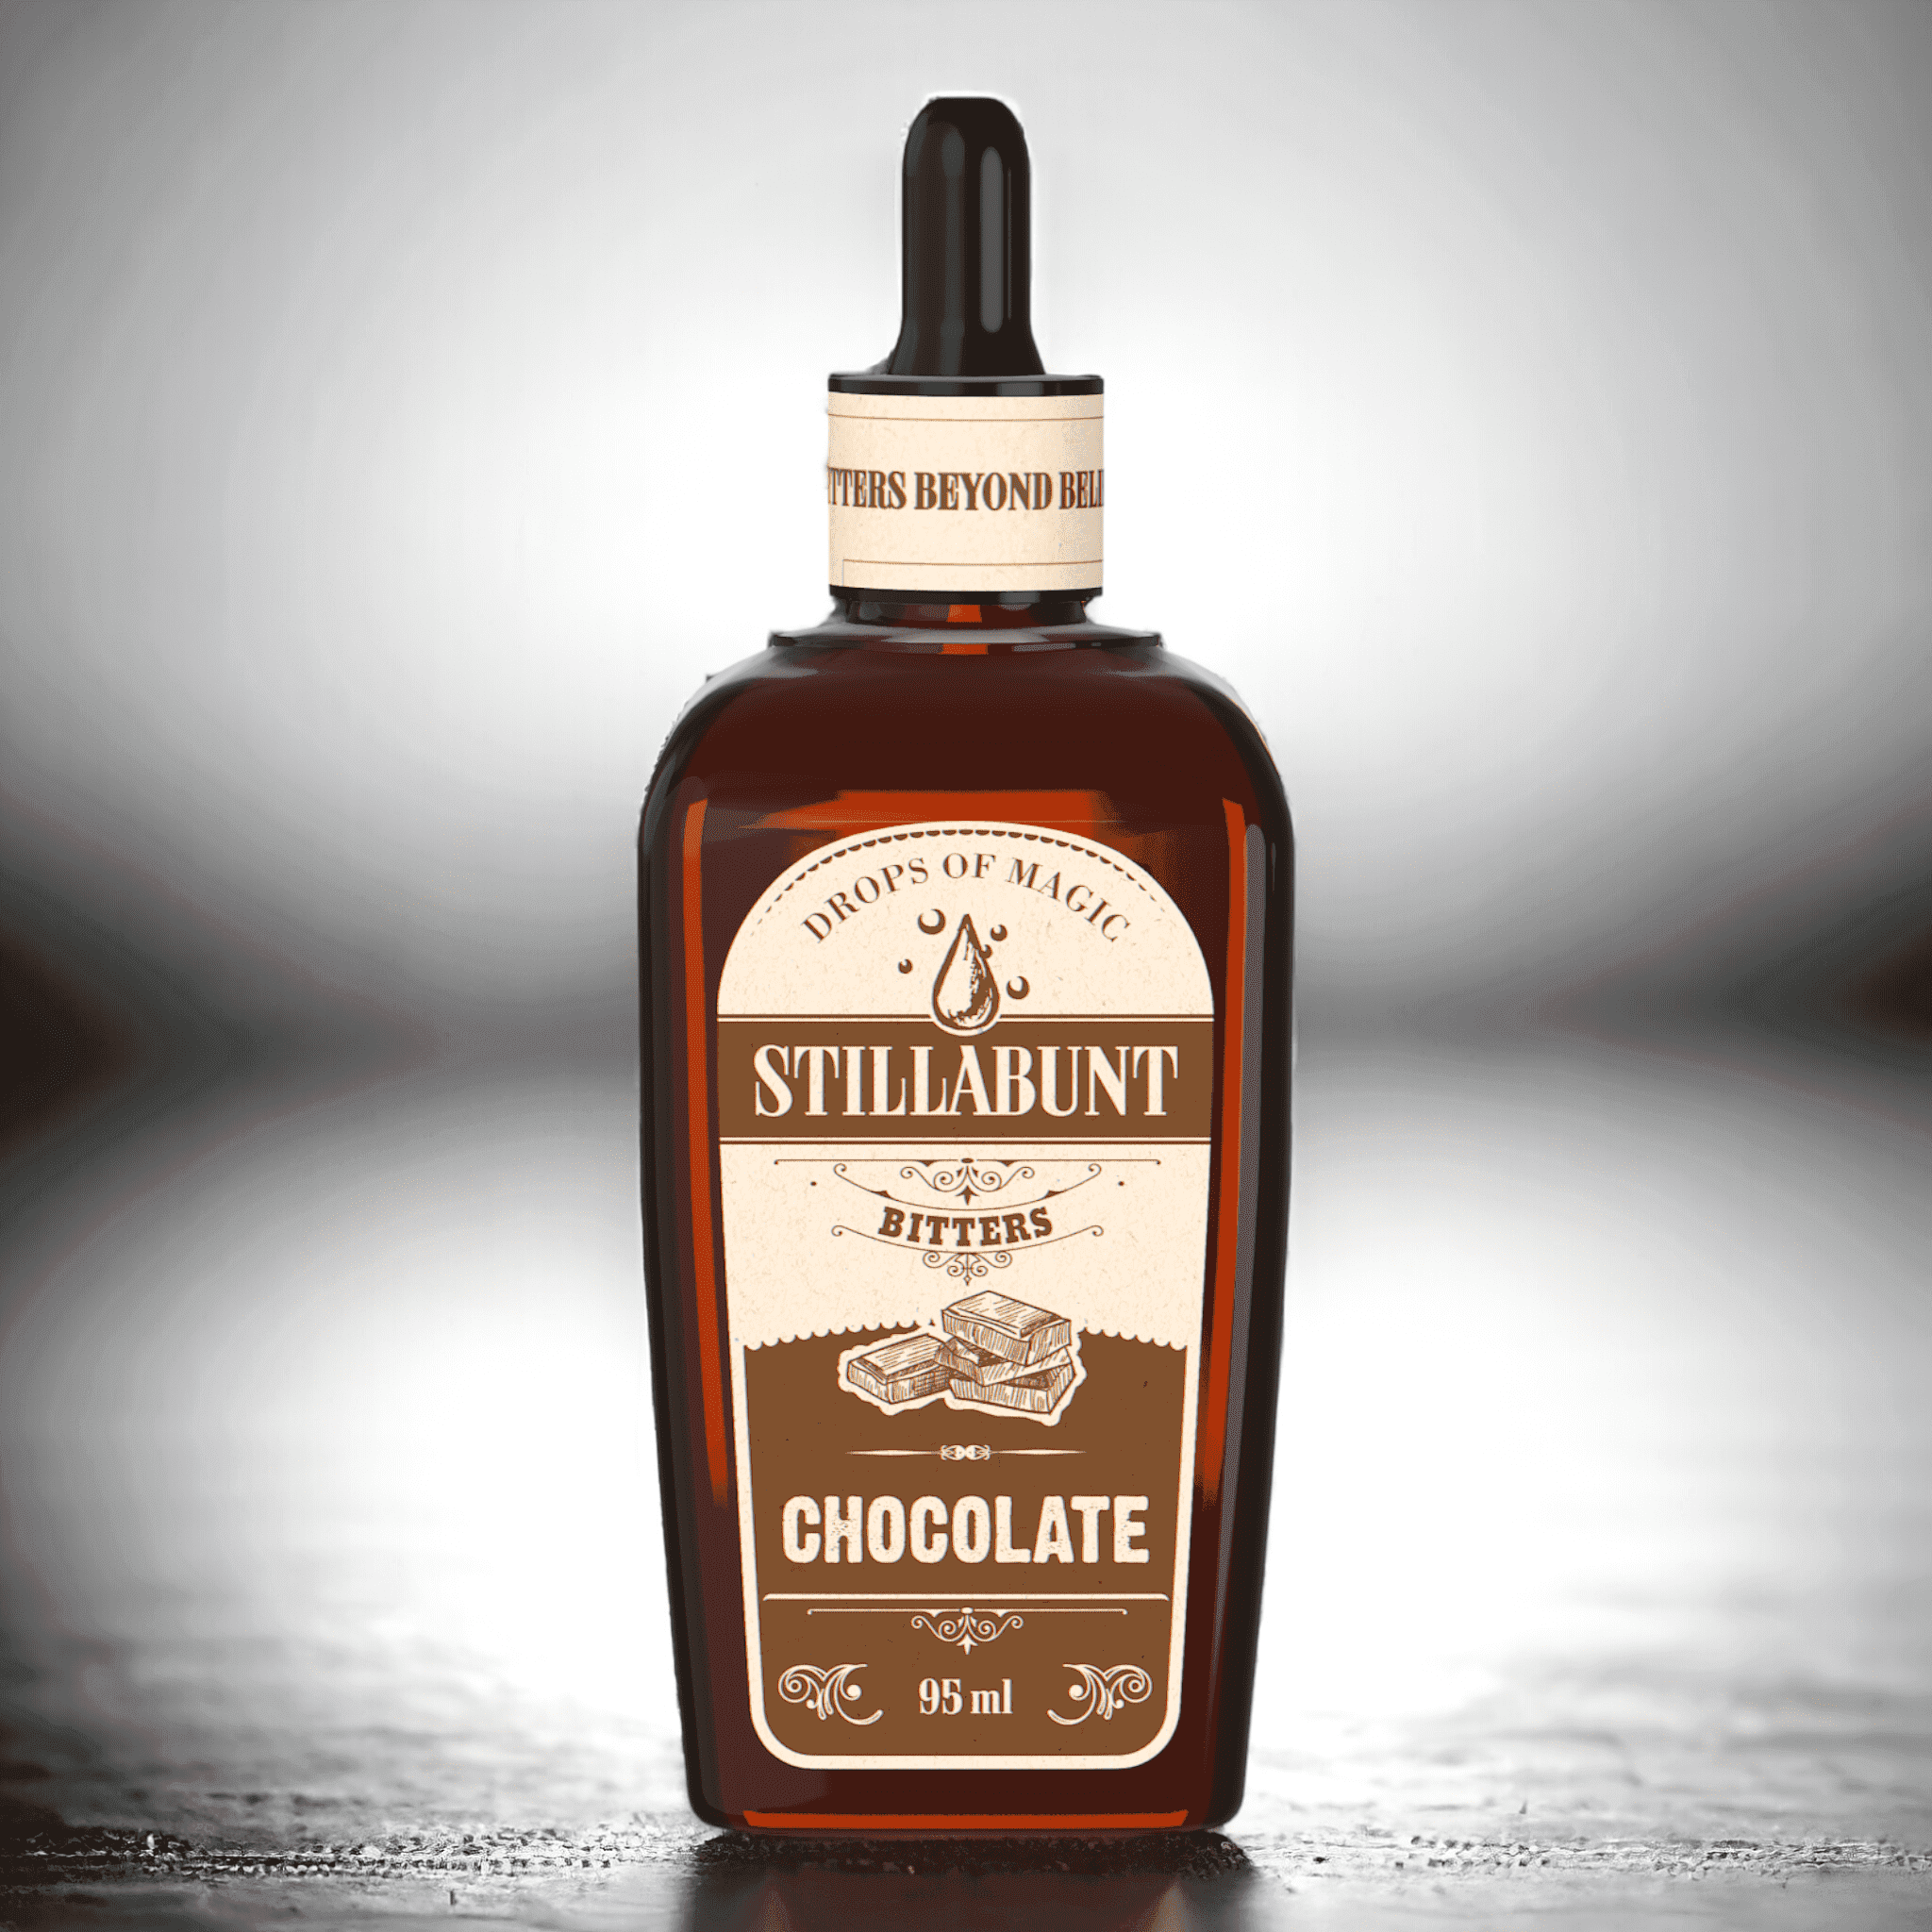 Stillabunt Chokolade bitter - Pift din cocktail op